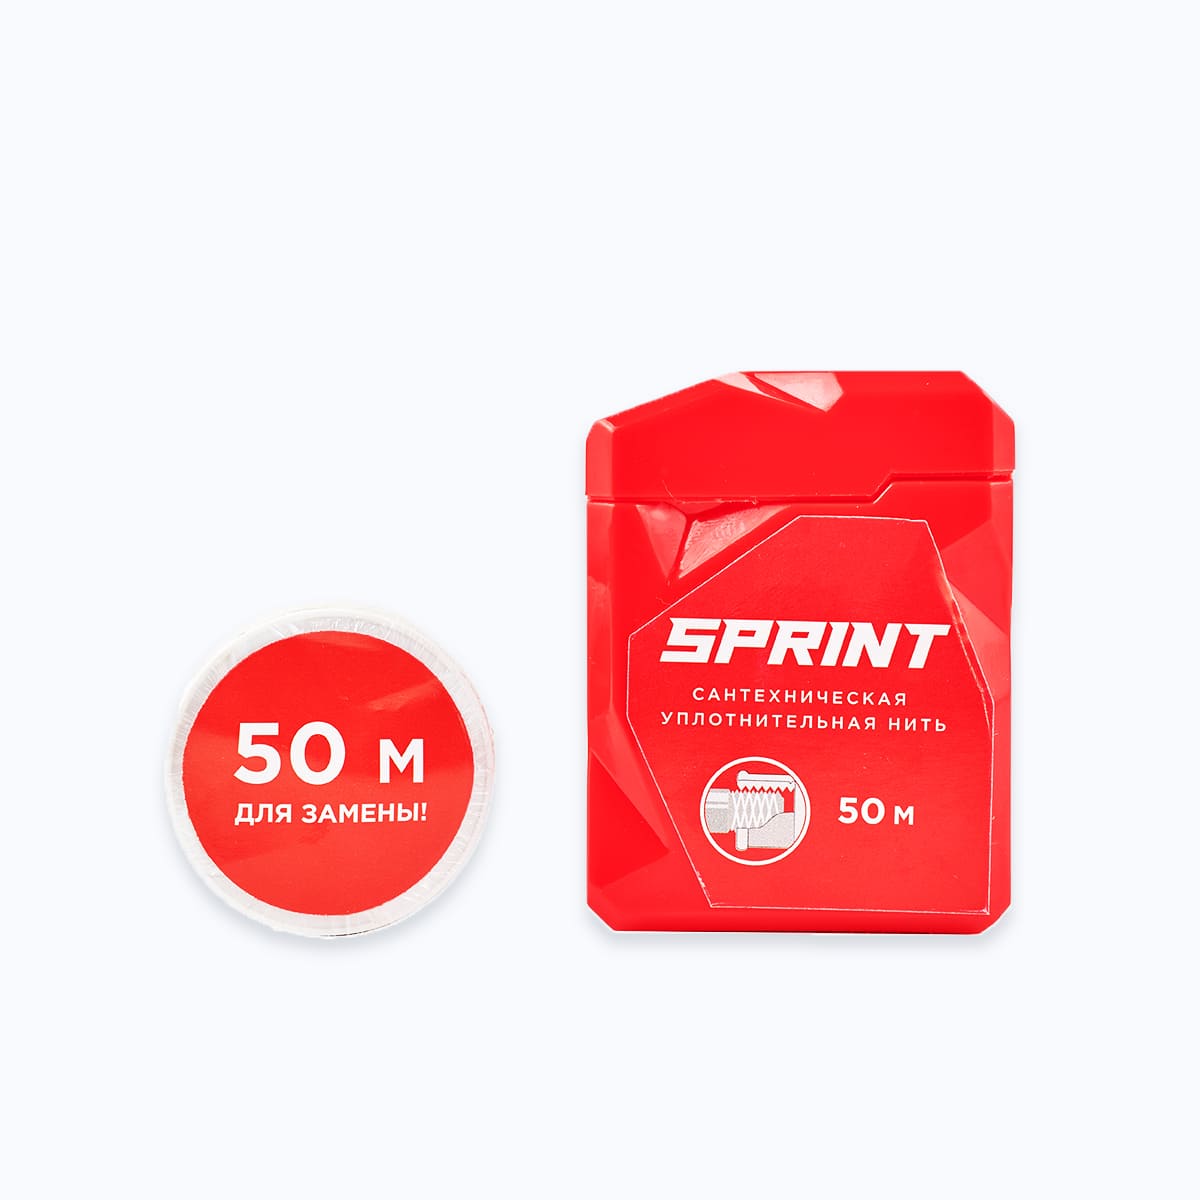 Нить сантехническая Sprint 50 м (3)